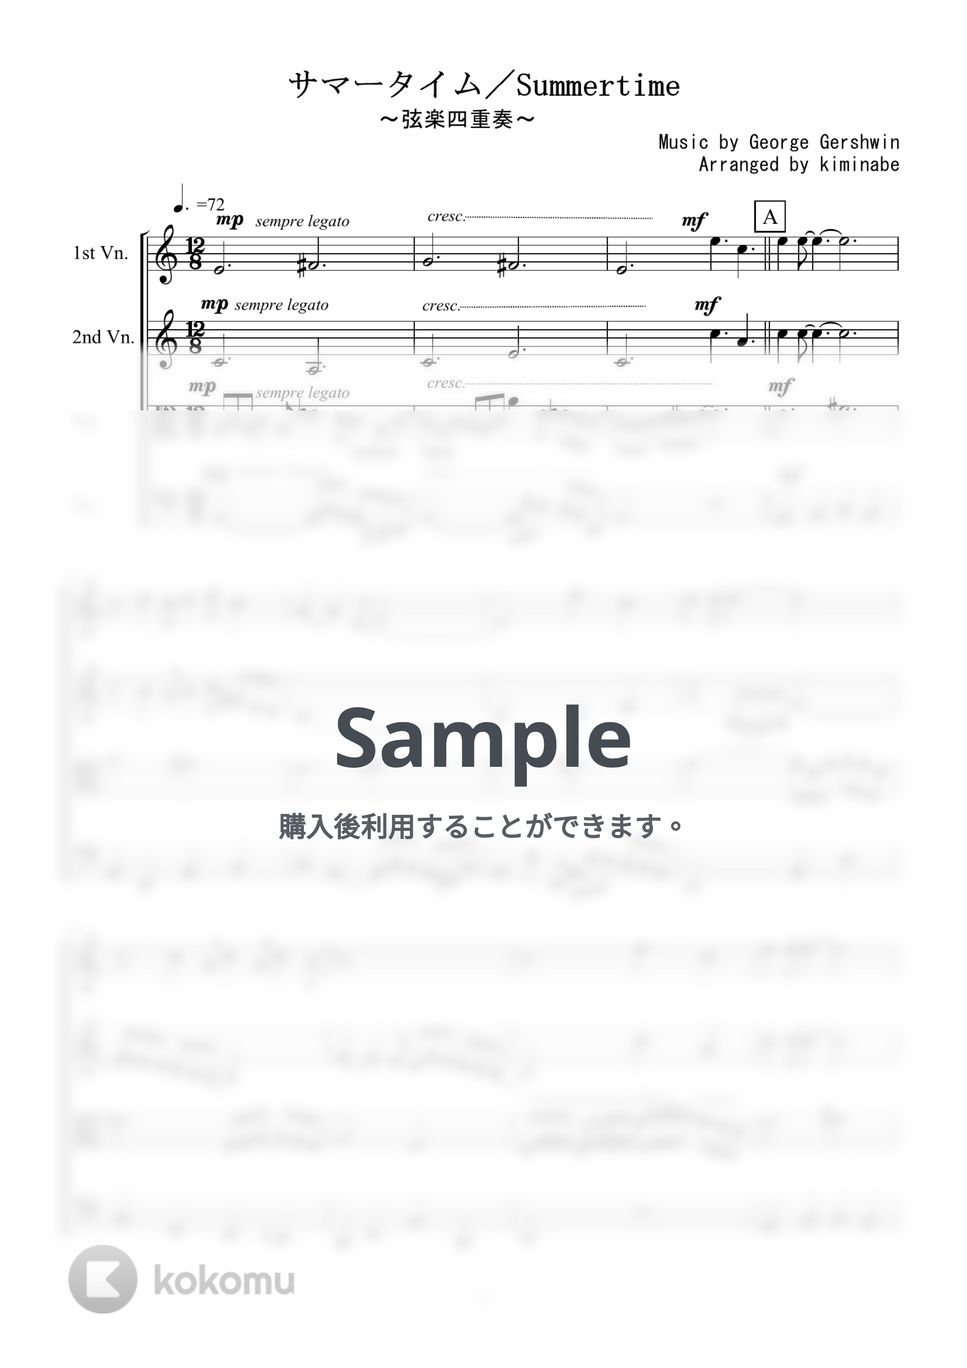 ガーシュウィン - Summertime (弦楽四重奏) by kiminabe